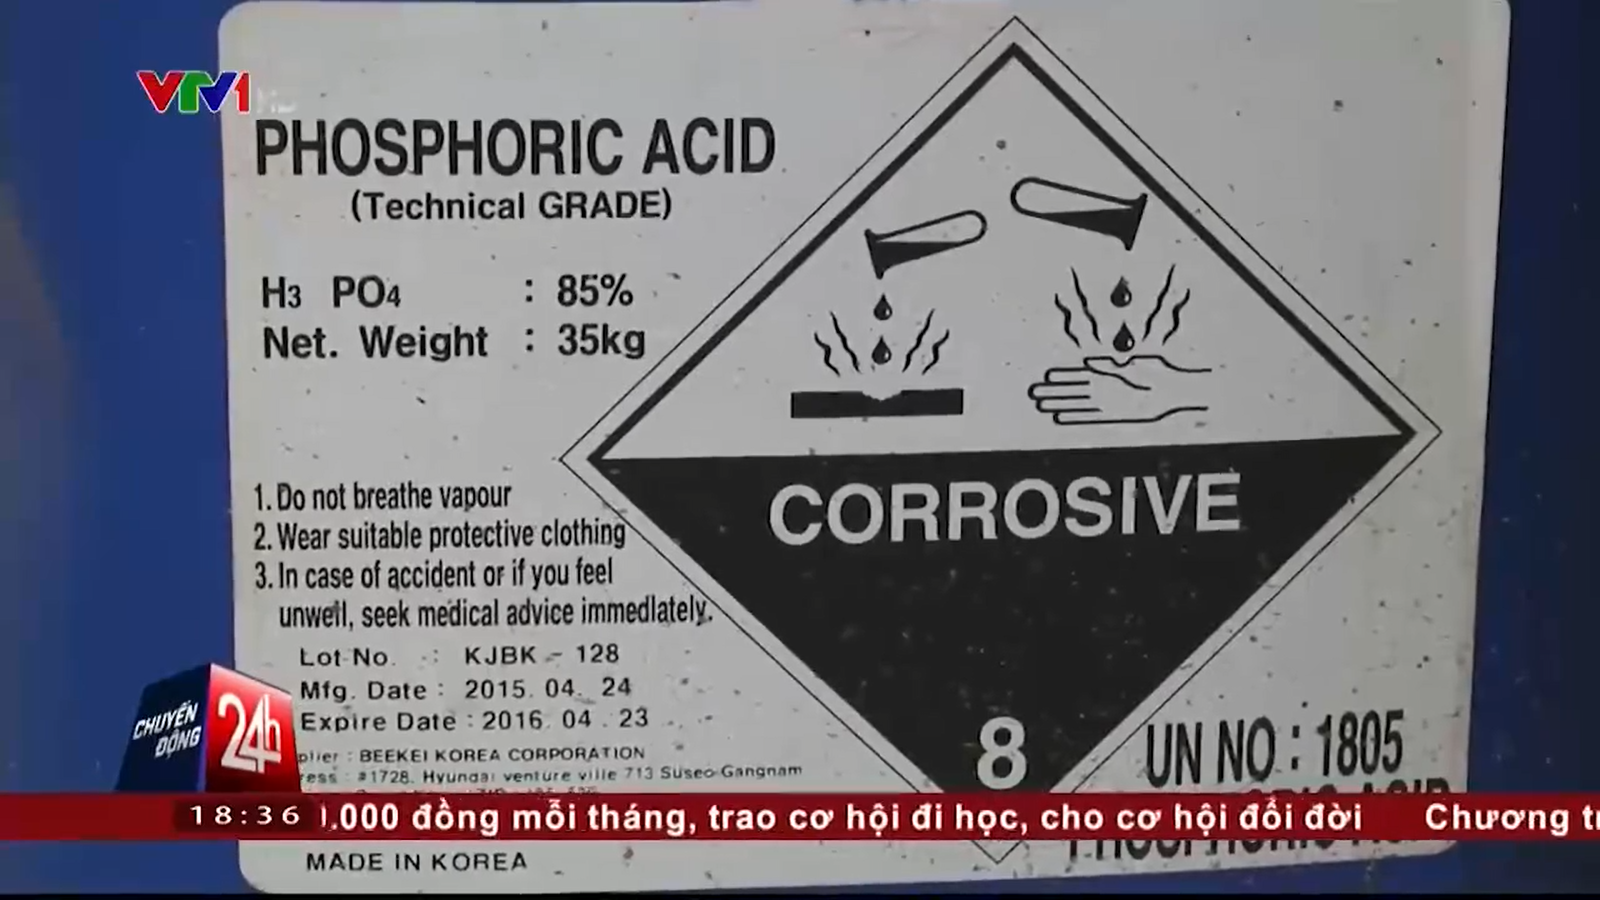 Axit Photphoric là hóa chất có tác dụng giúp nhang cuộn tàn